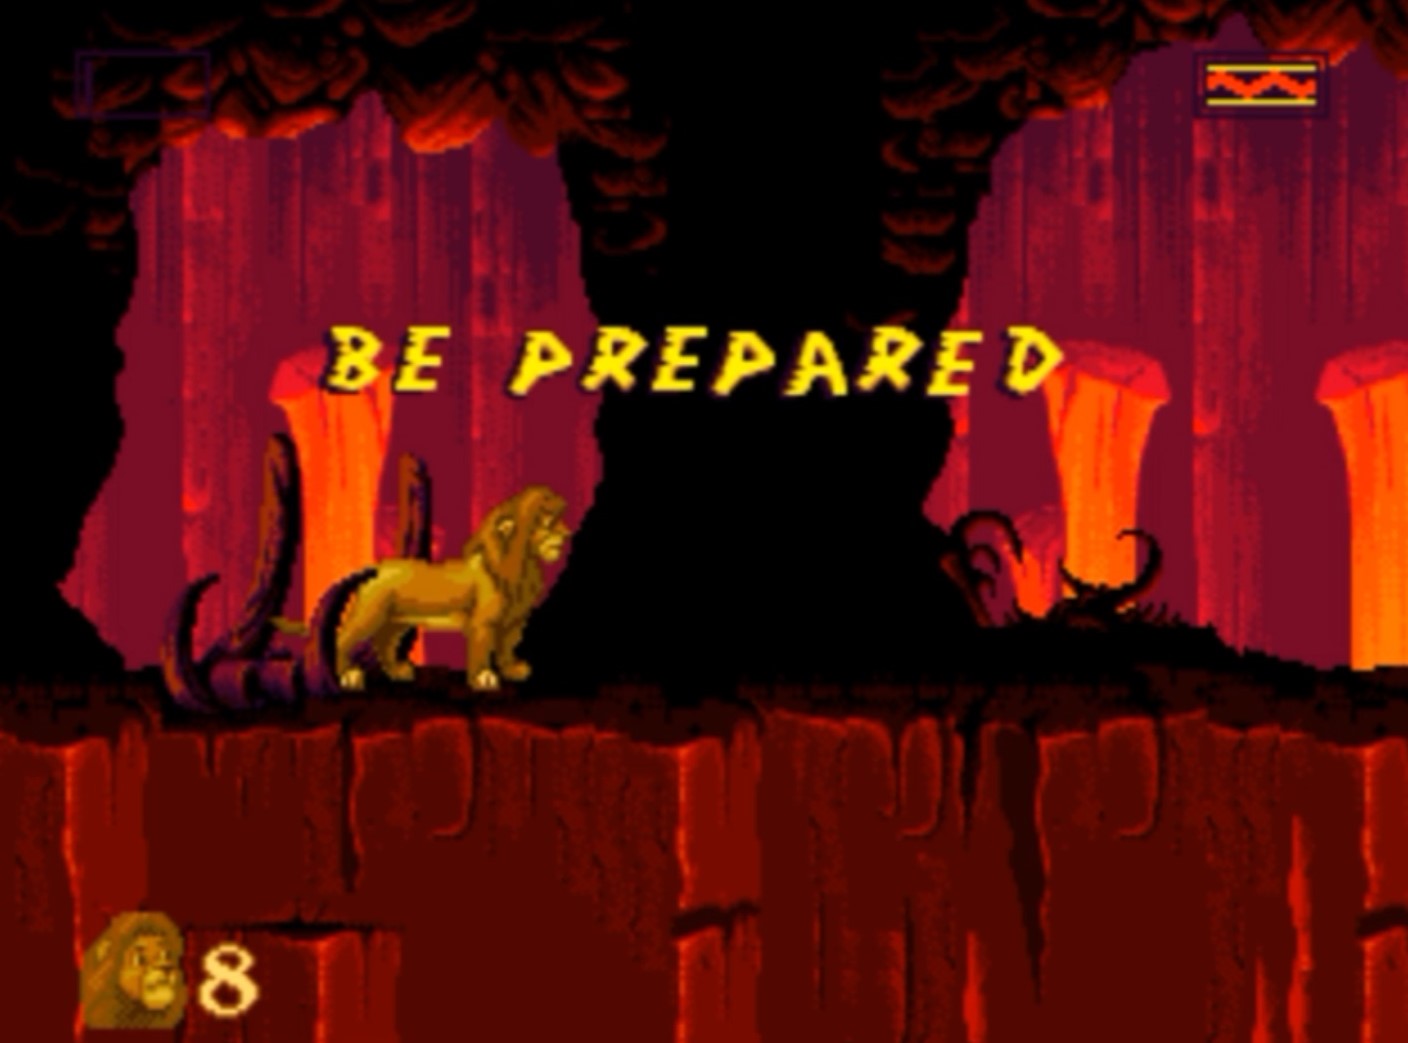 Sega Mega Drive 2 (Smd) 16-bit The Lion King 1 Level 8 Be Prepared Прохождение